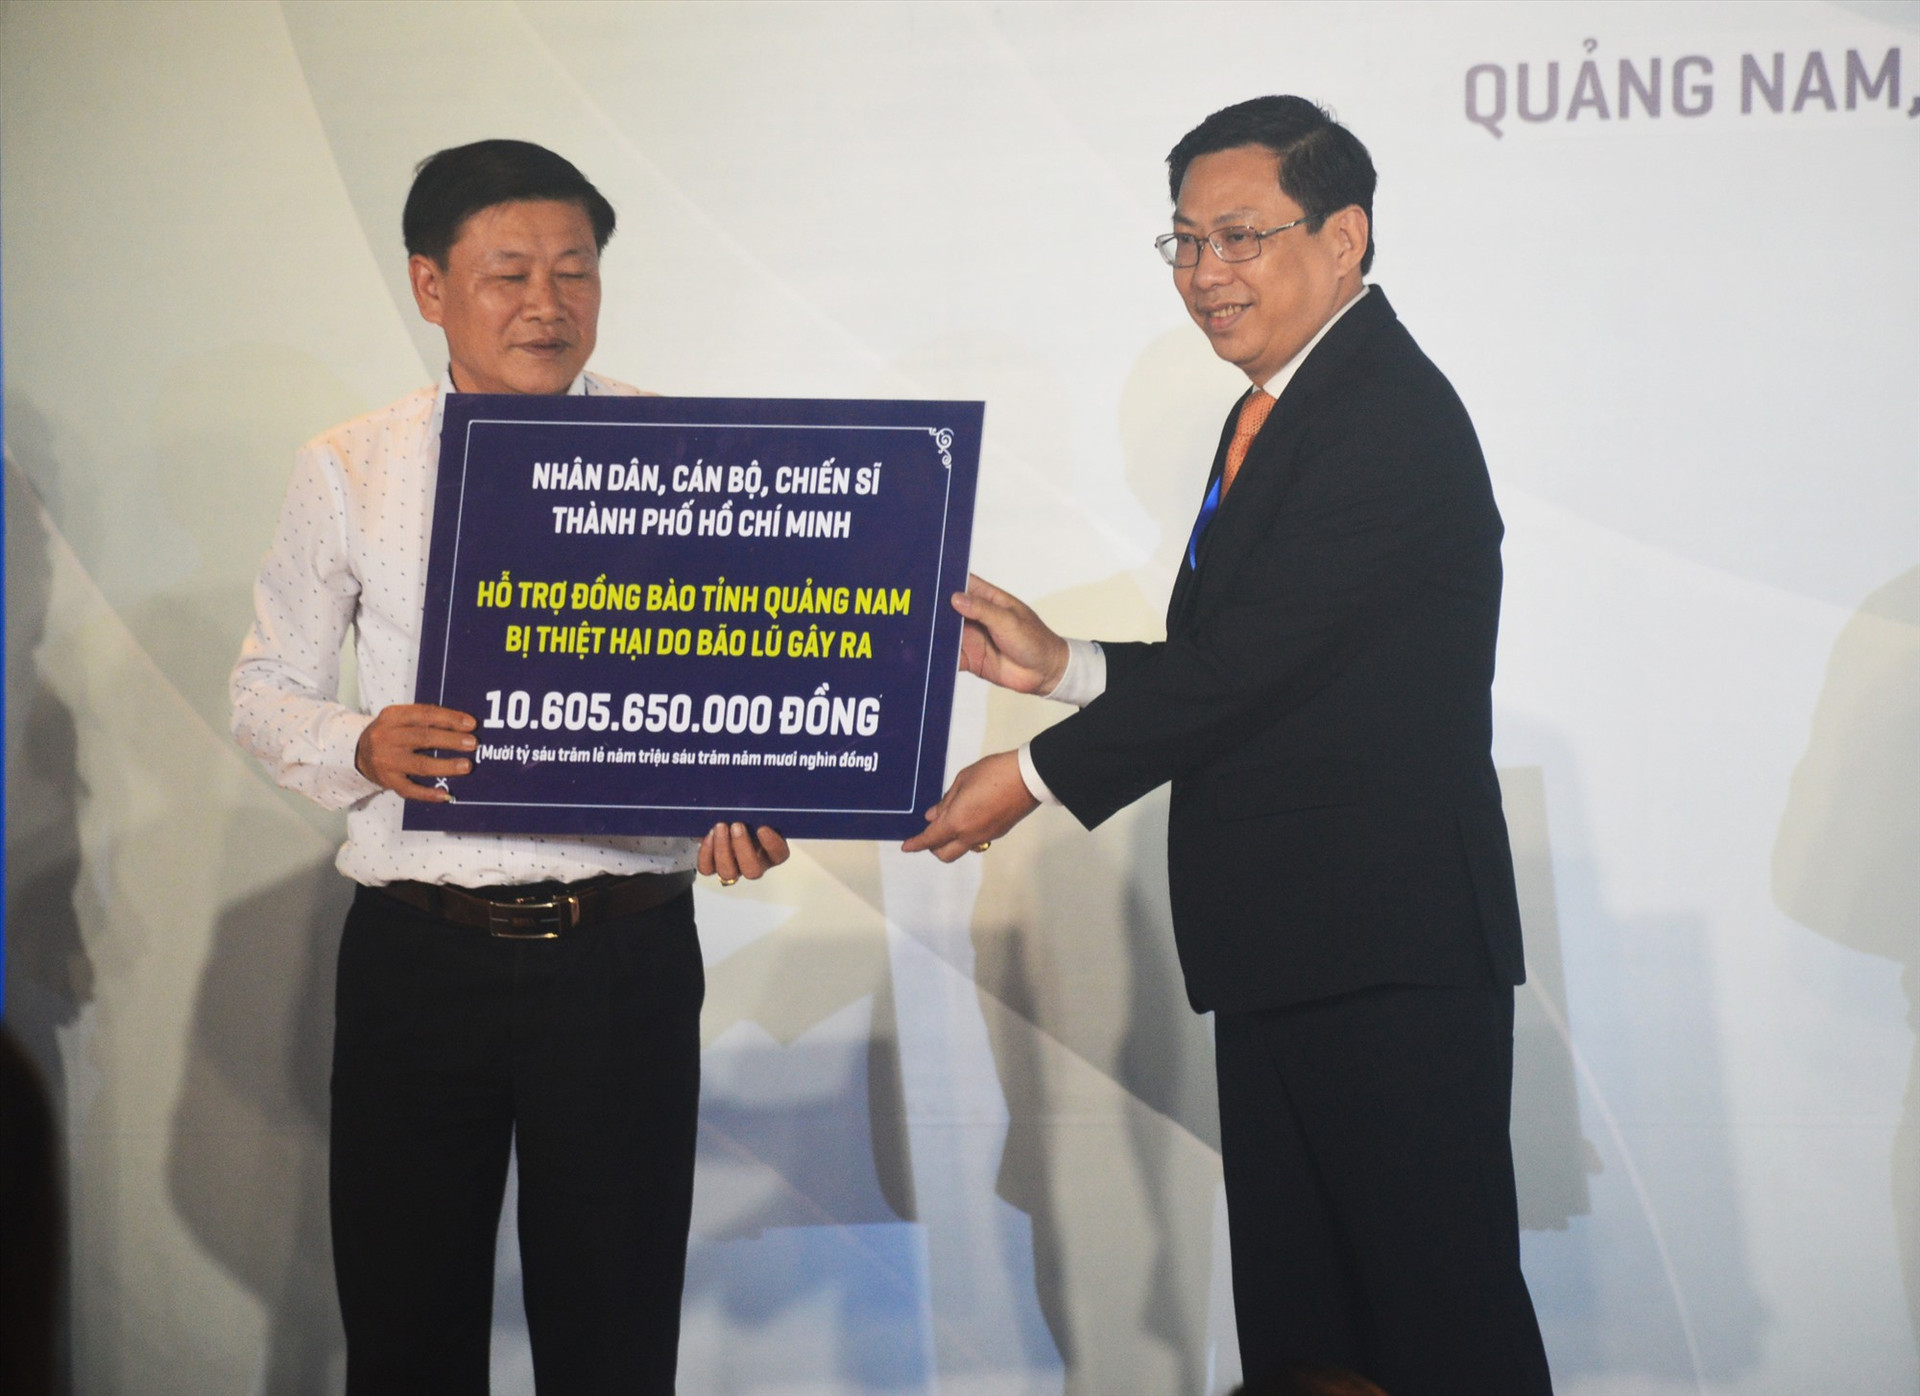 Đại diện lãnh đạo TP.Hồ Chí Minh trao biển tượng trưng số tiền hơn 10,6 tỷ đồng ủng hộ đồng bào Quảng Nam. Ảnh: T.L